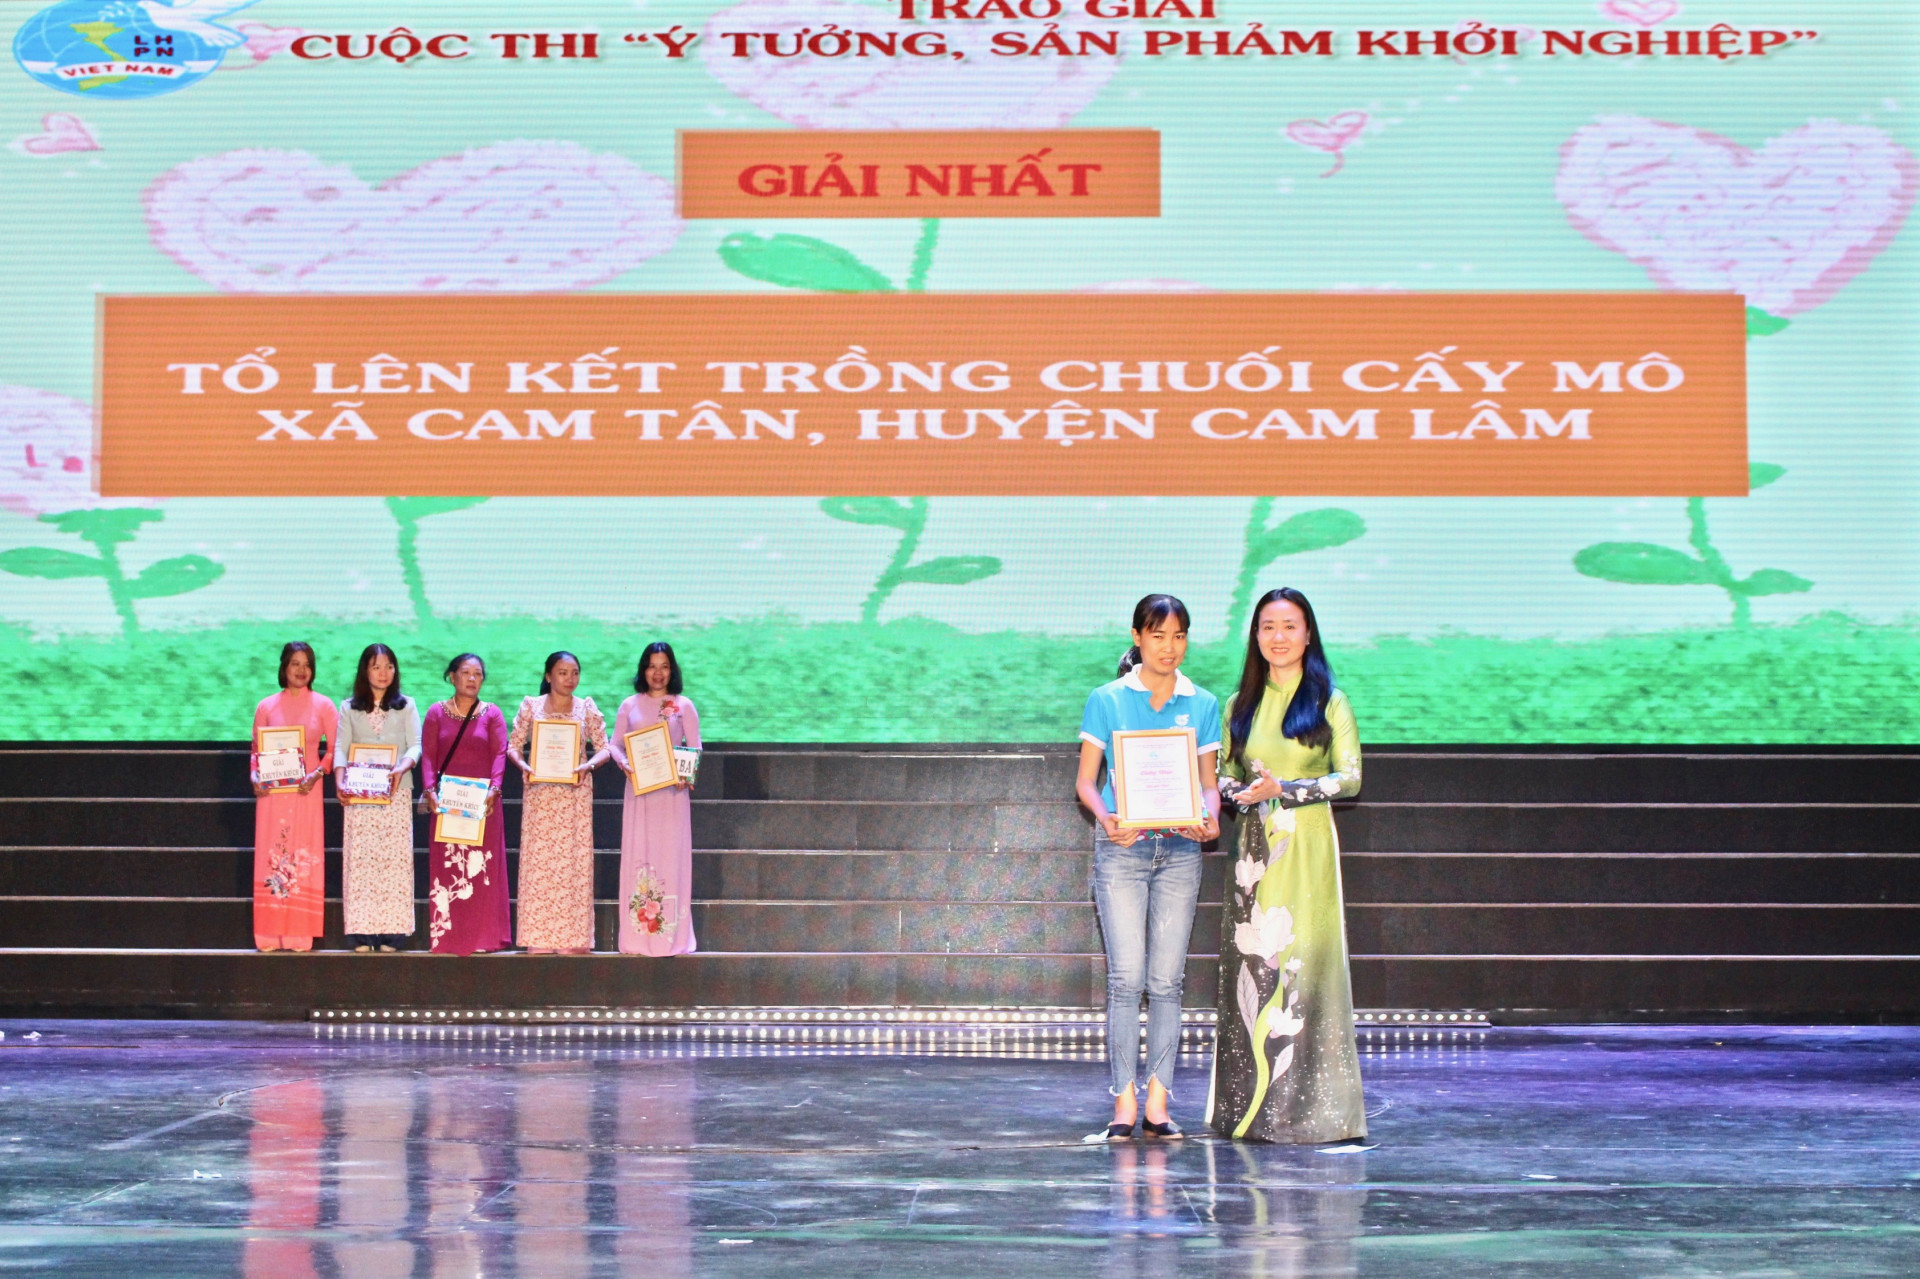 Tổ liên kết trồng chuối cấy mô - xã Cam Tân, huyện Cam Lâm đạt giải nhất Cuộc thi ý tưởng sản phẩm khởi nghiệp năm 2020